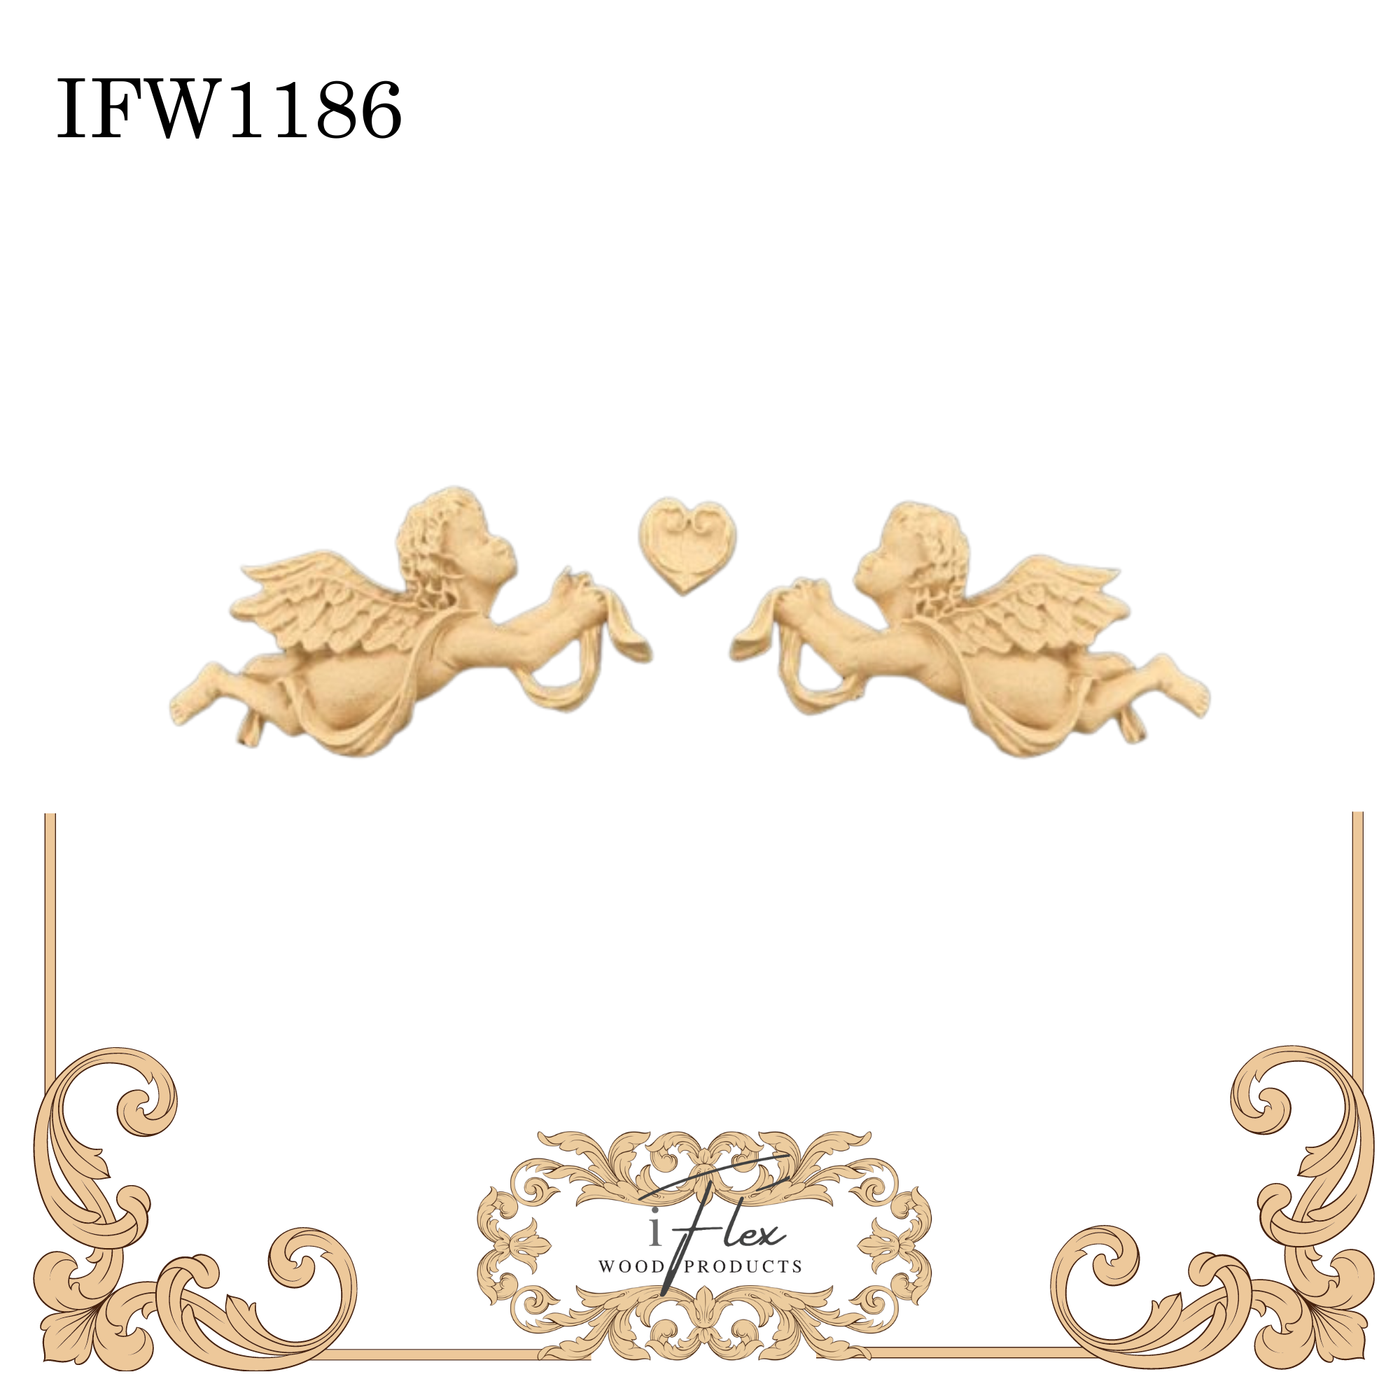 IFW 1186